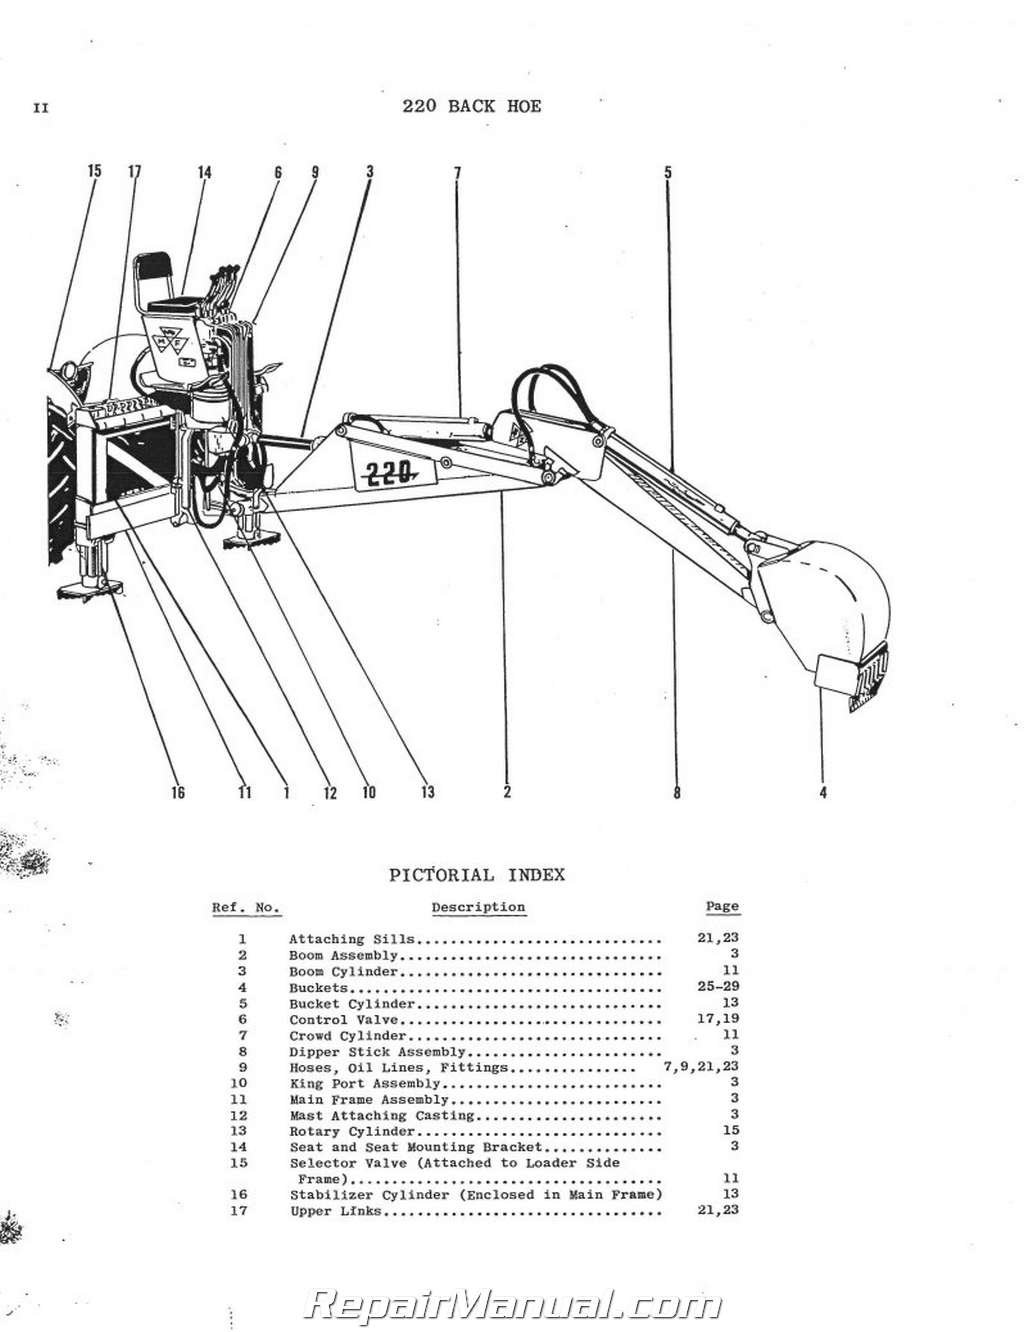 Massey Ferguson MF 220 Industrial Backhoe Parts Manual